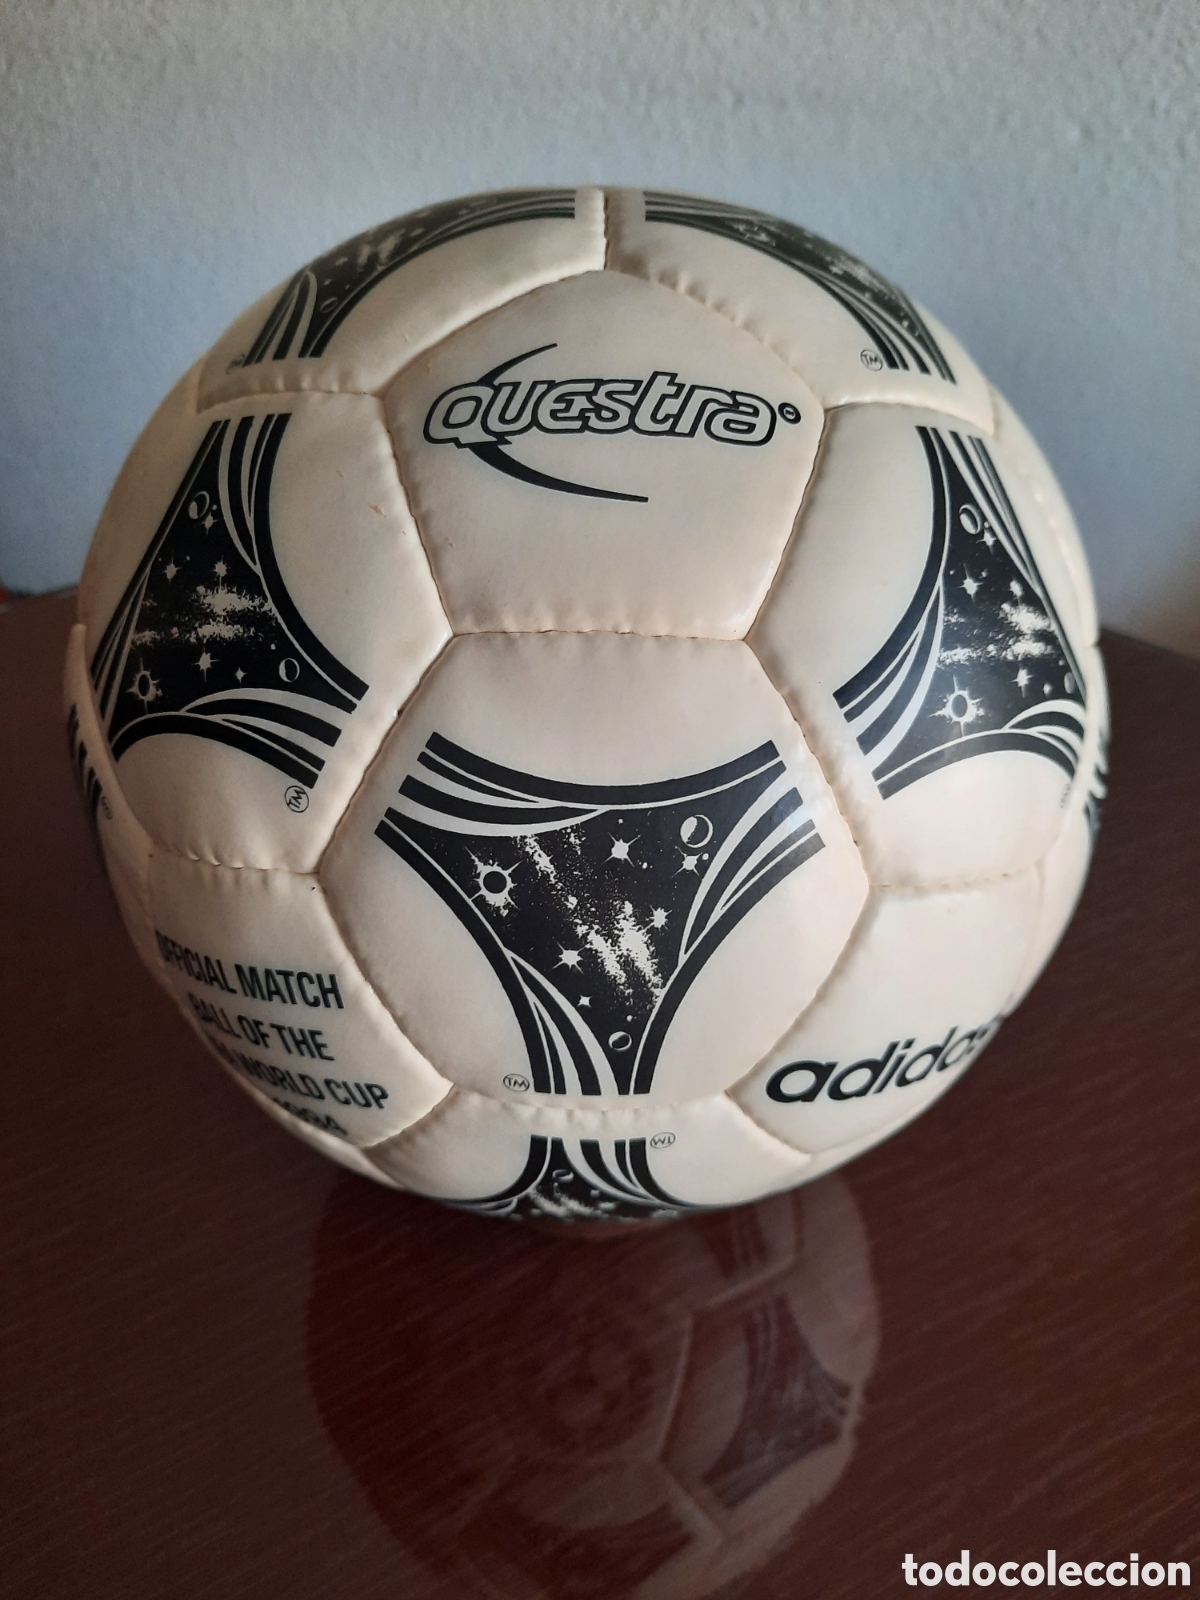 balón fútbol adidas questra - Compra venta en todocoleccion